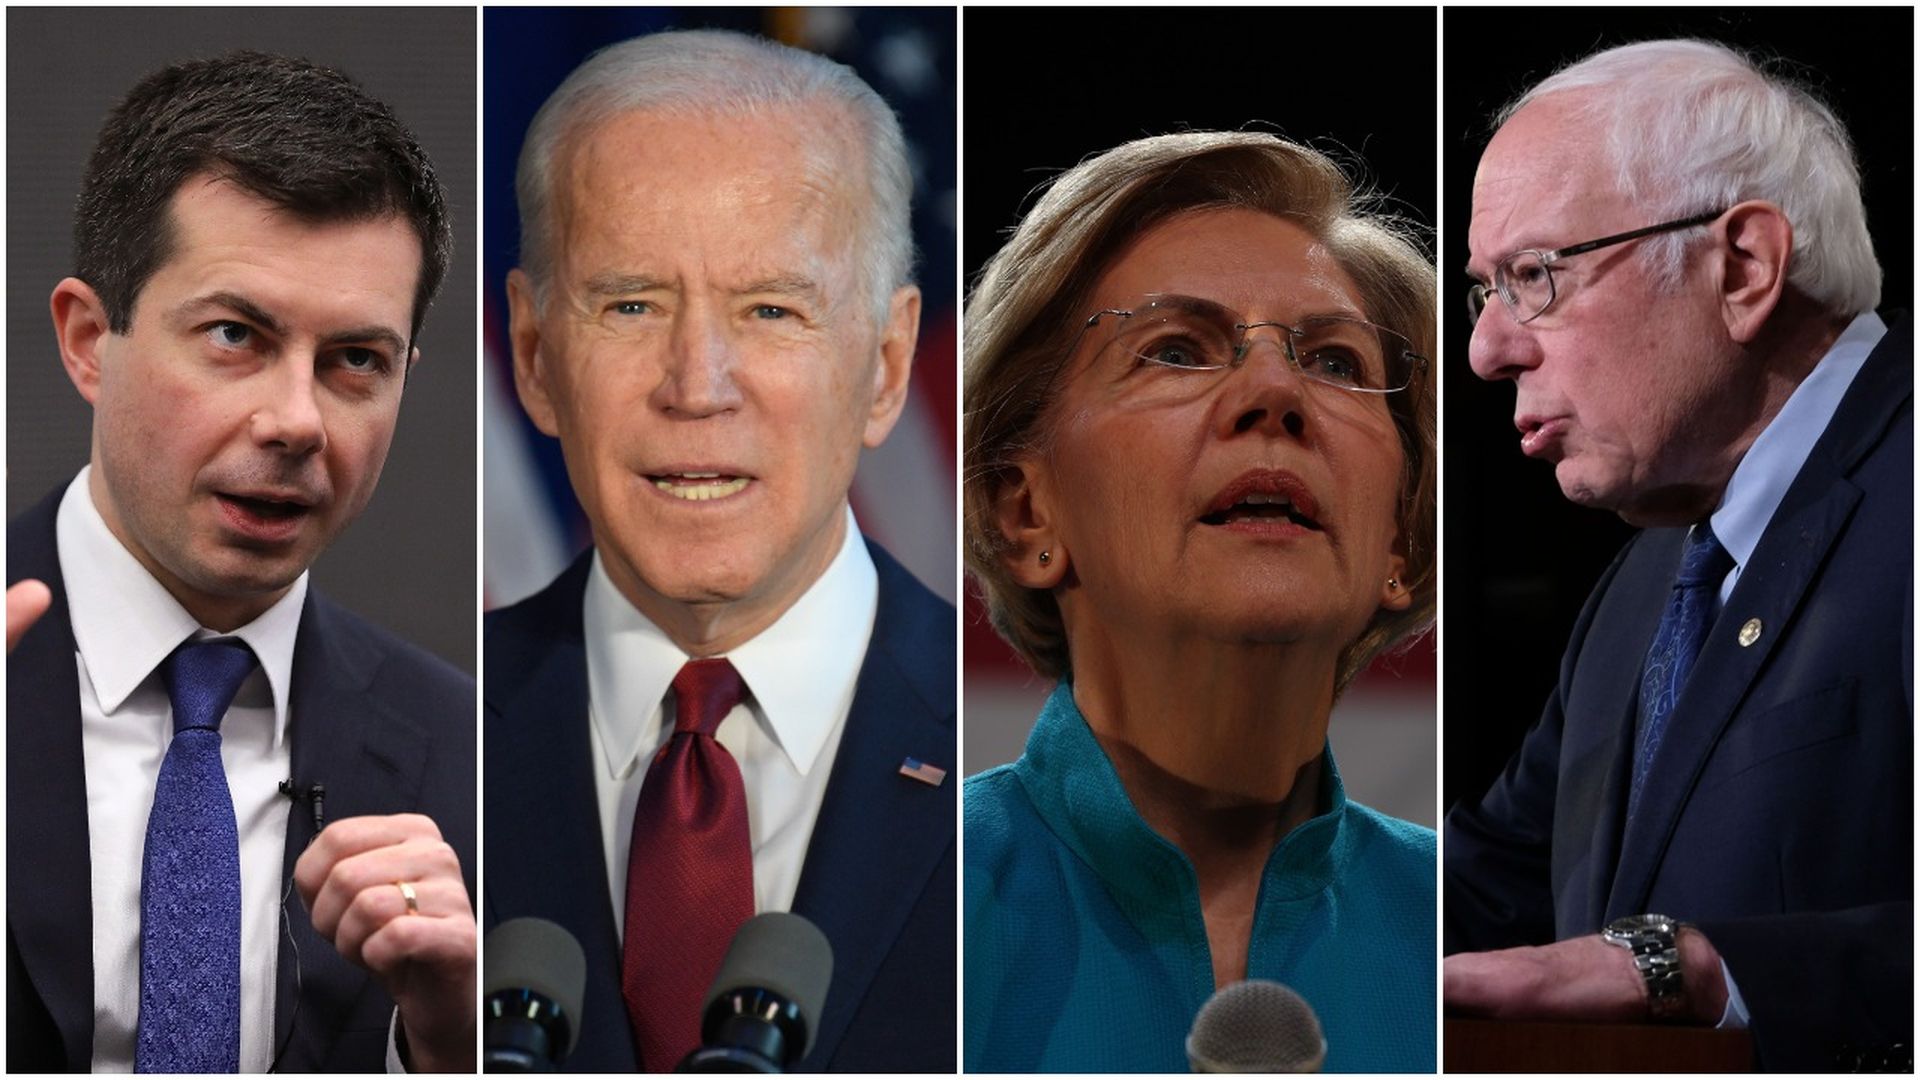 This image is a four-way split between Joe Biden, Elizabeth Warren, Pete Buttigieg, Bernie Sanders